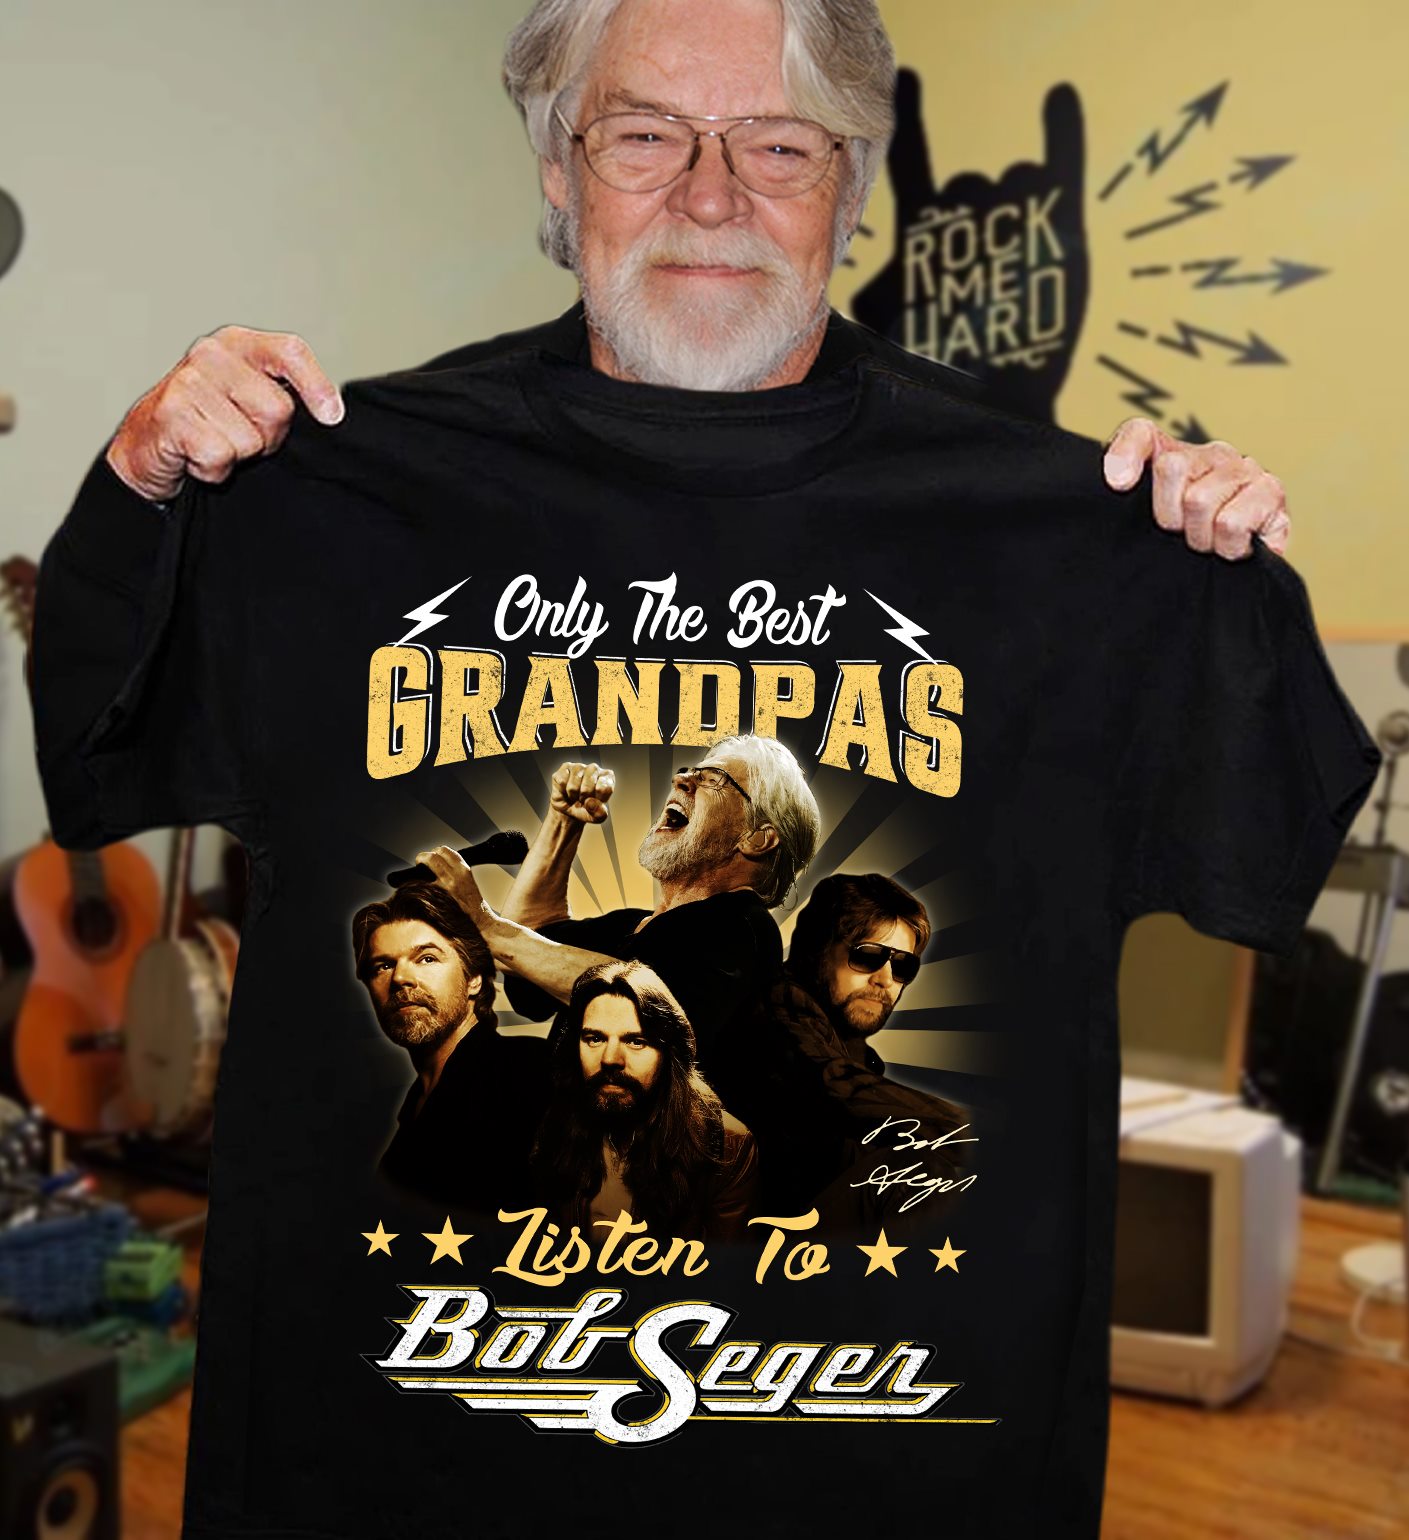 Only the best grandpas listen to Bob Seger - Bob Seger singer